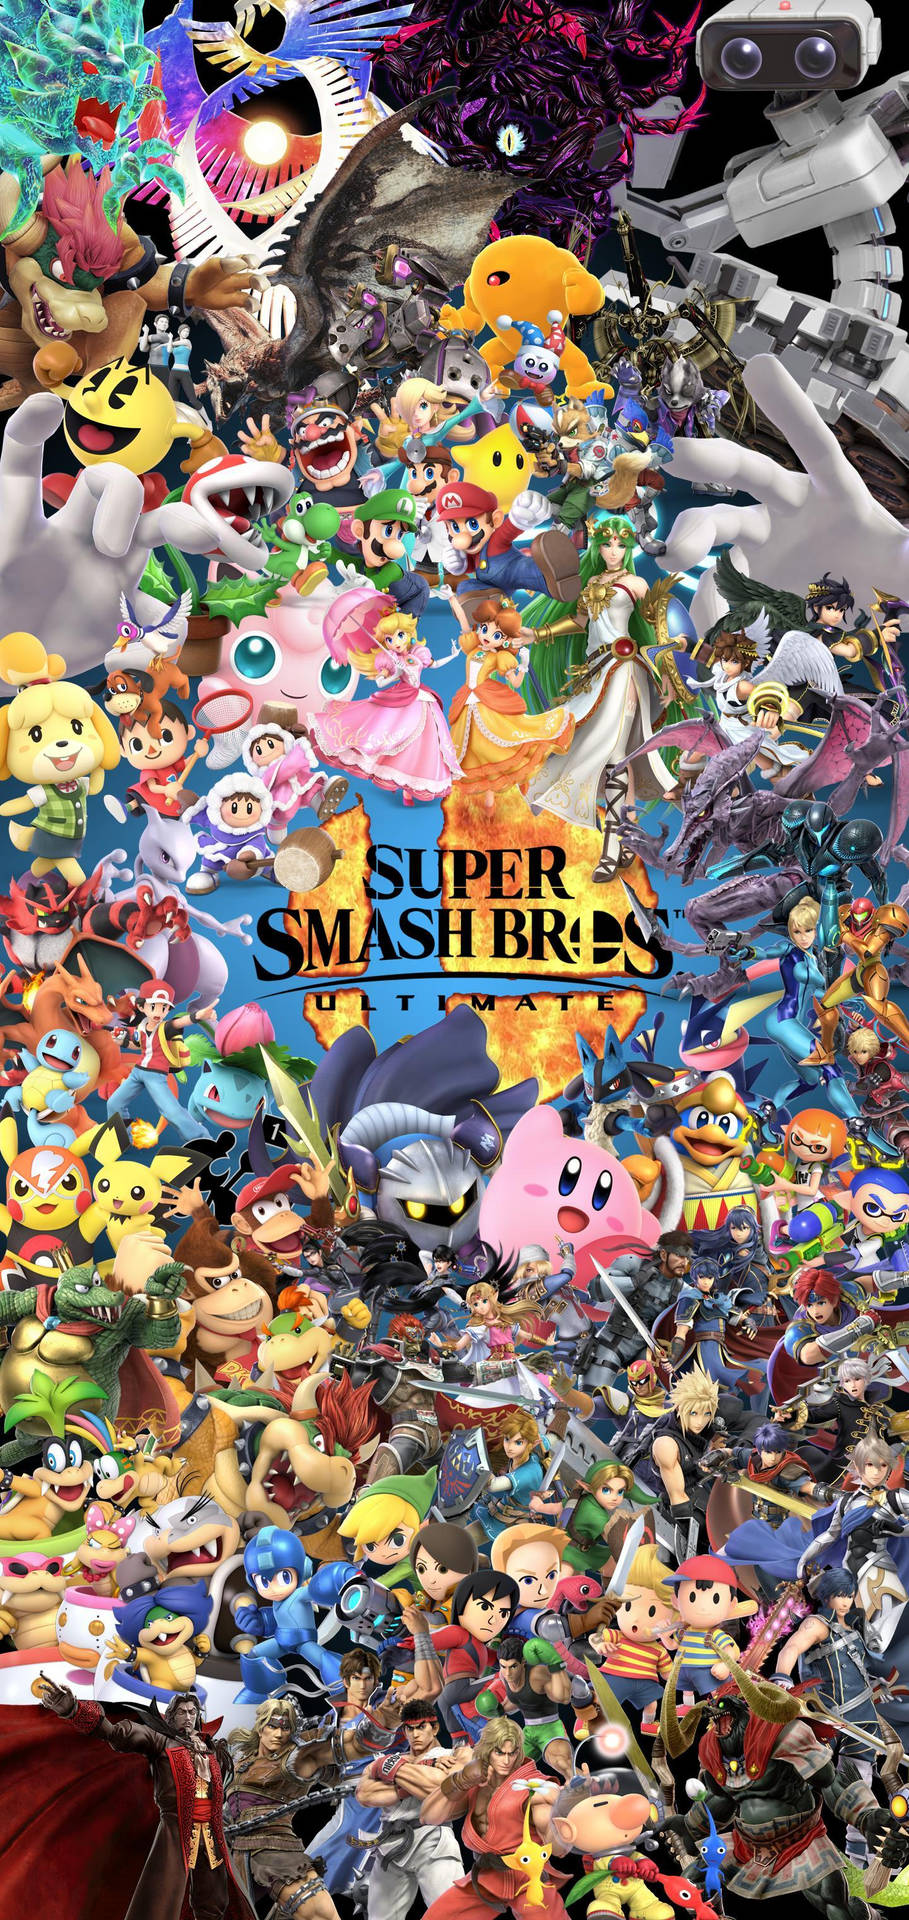 Imágenes De Super Smash Bros Ultimate